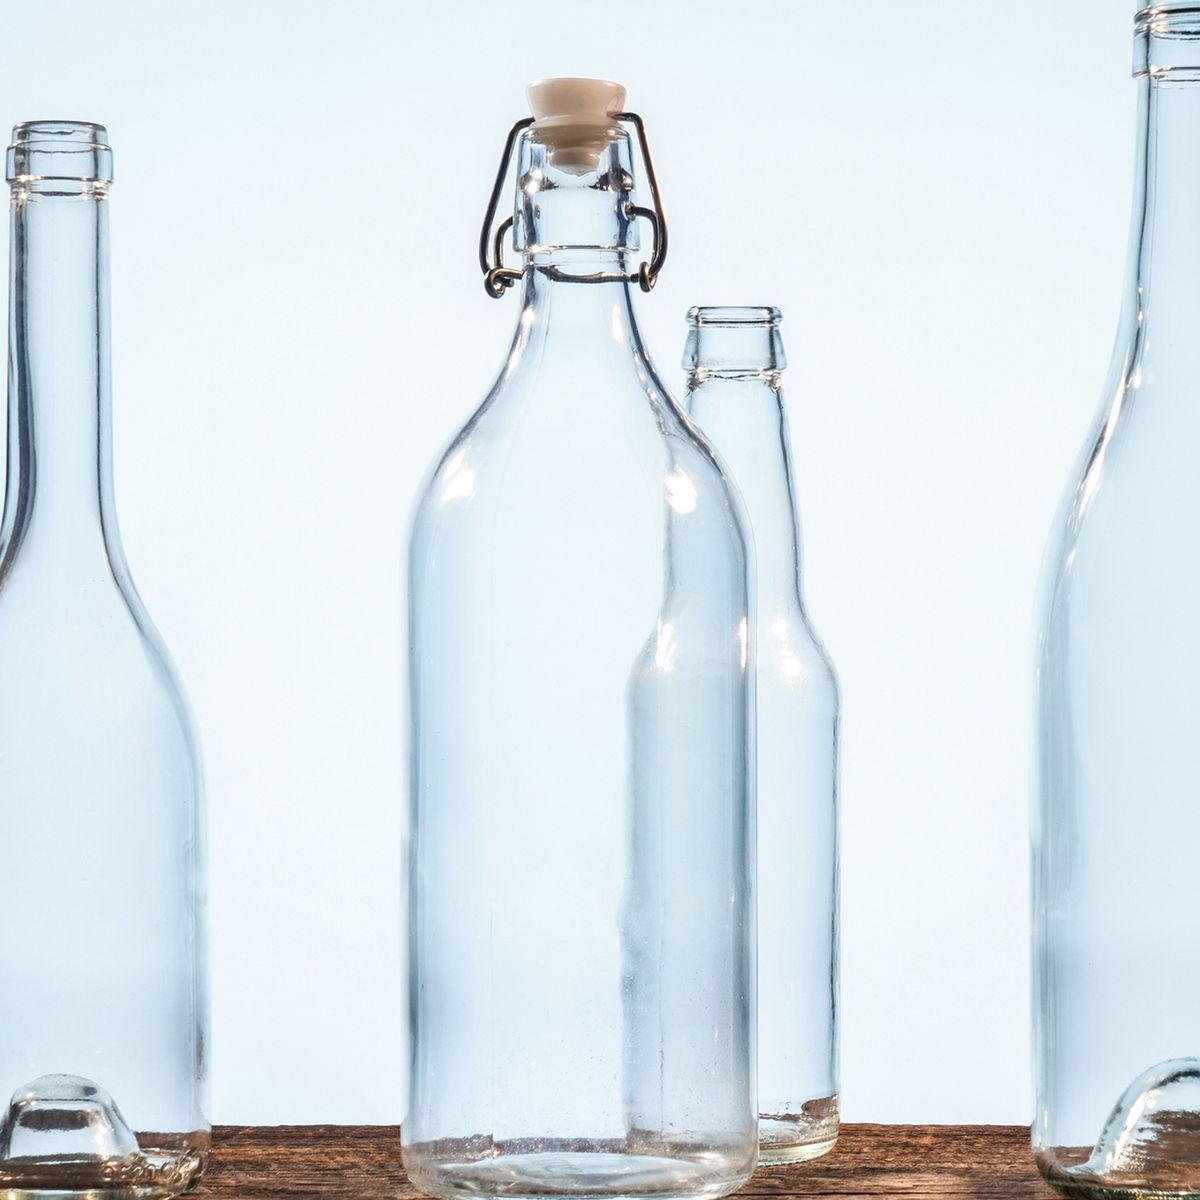 Trucos caseros: La manera correcta de limpiar por dentro las botellas de  vidrio, remedios, hacks, nnda nnni, RESPUESTAS